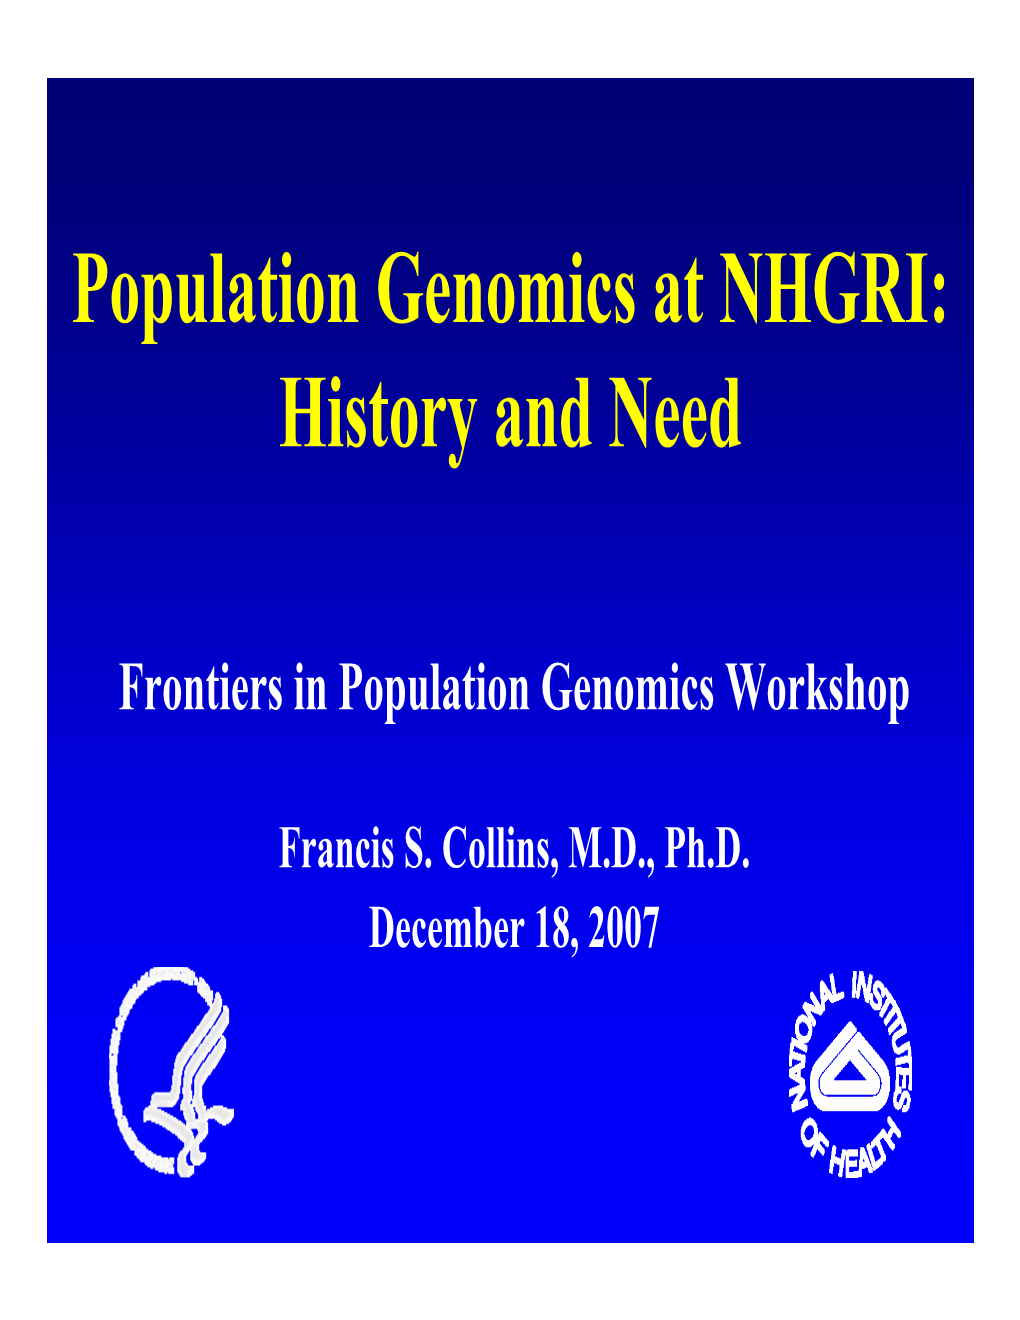 Population Genomics at NHGRI: History and Need